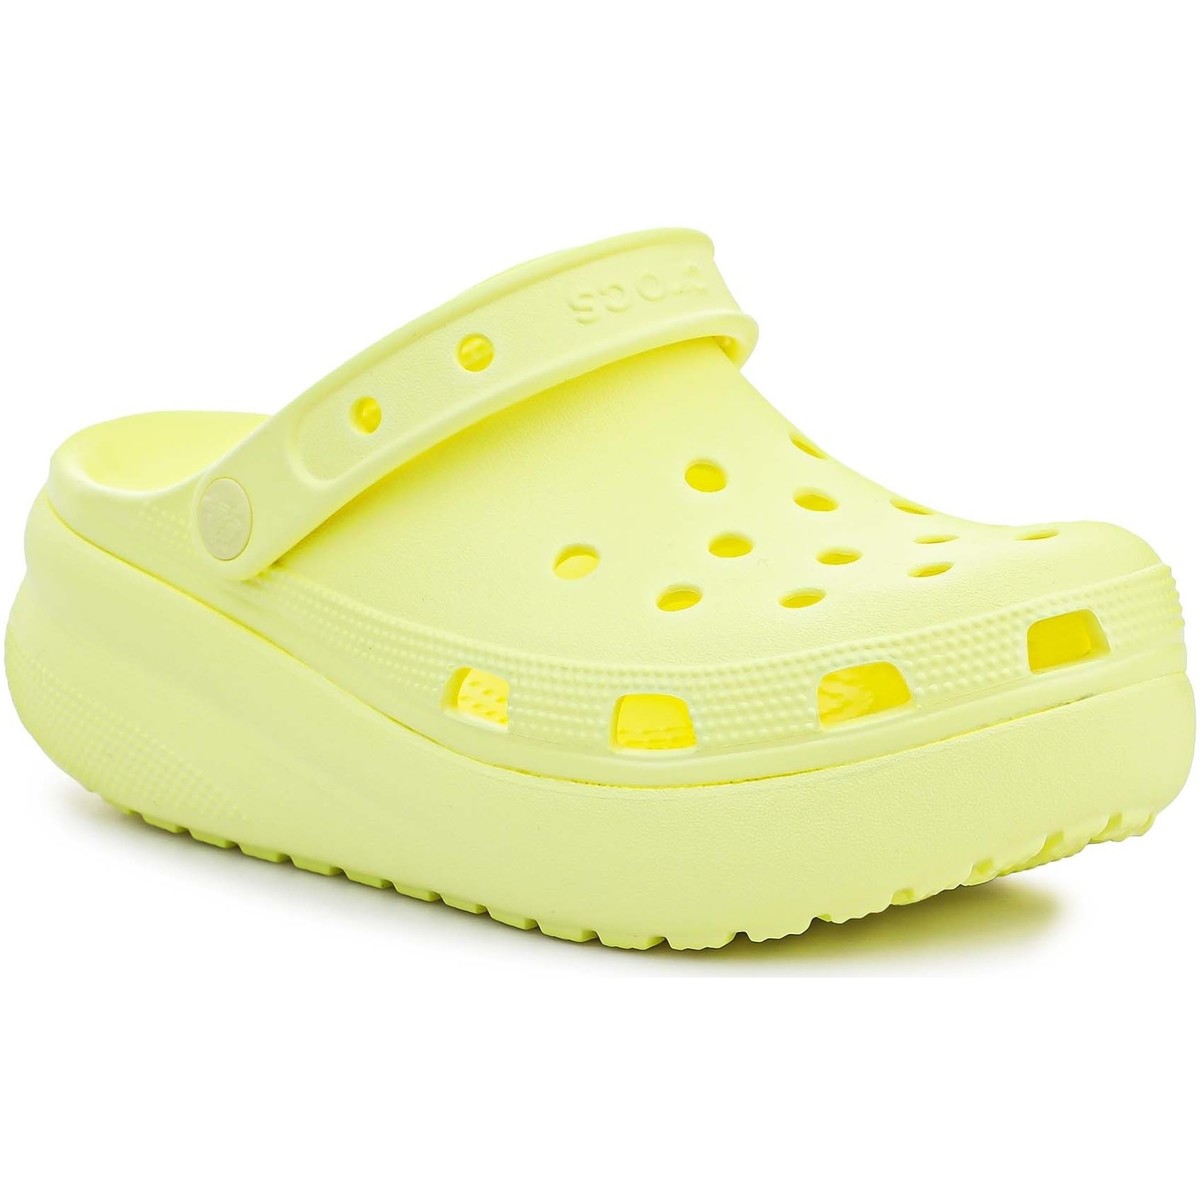 Σανδάλια Crocs Classic Cutie Clog Kids 207708-75U